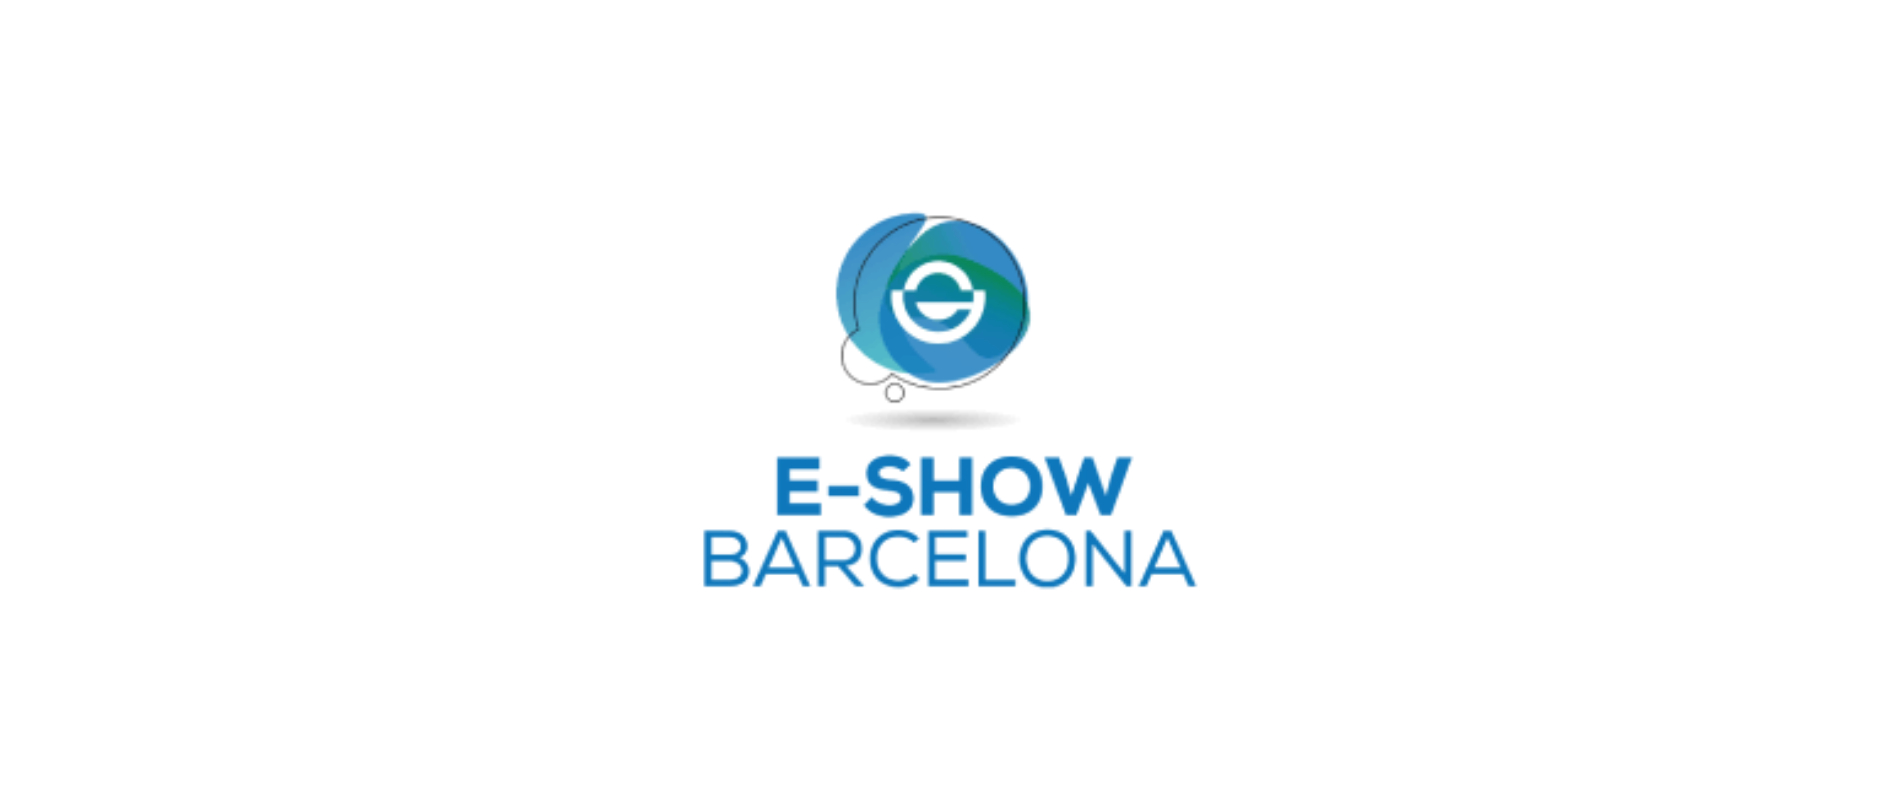 Hotel para E-Show en Barcelona